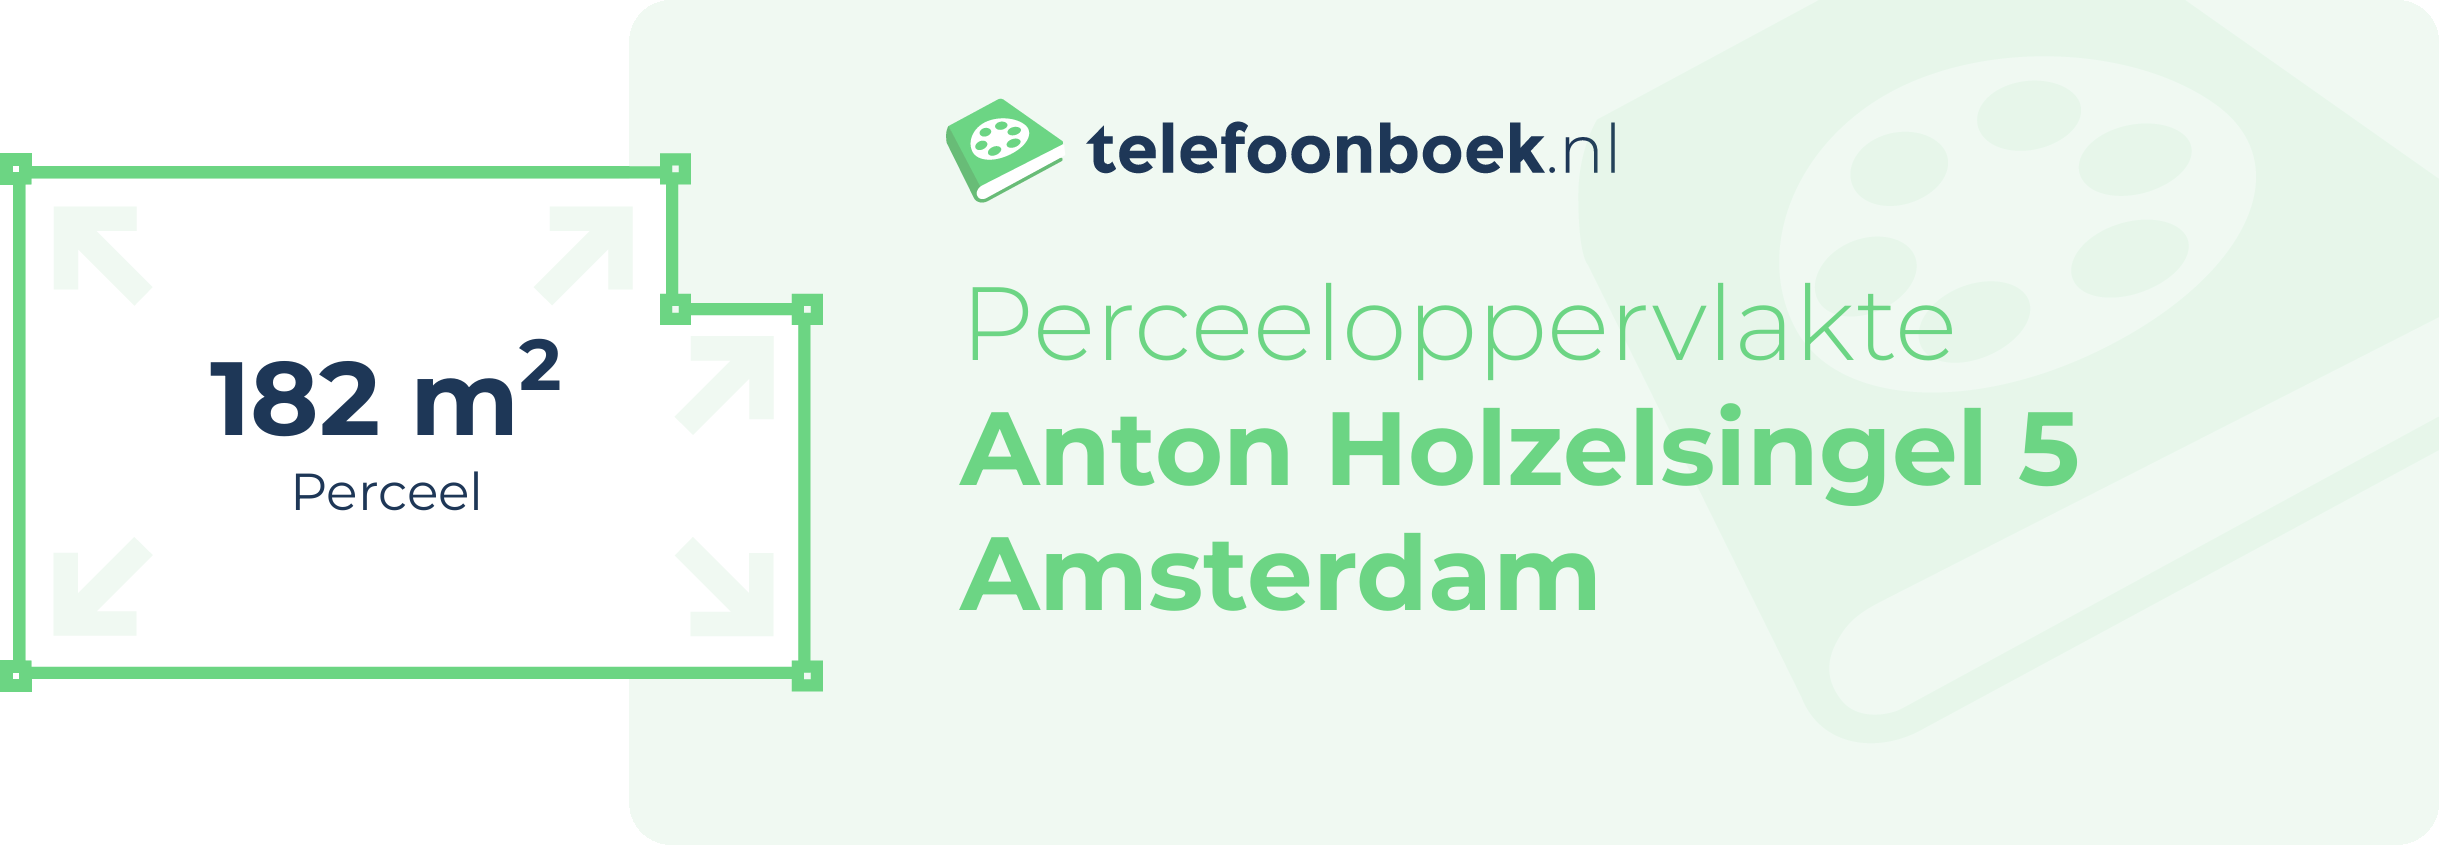 Perceeloppervlakte Anton Holzelsingel 5 Amsterdam